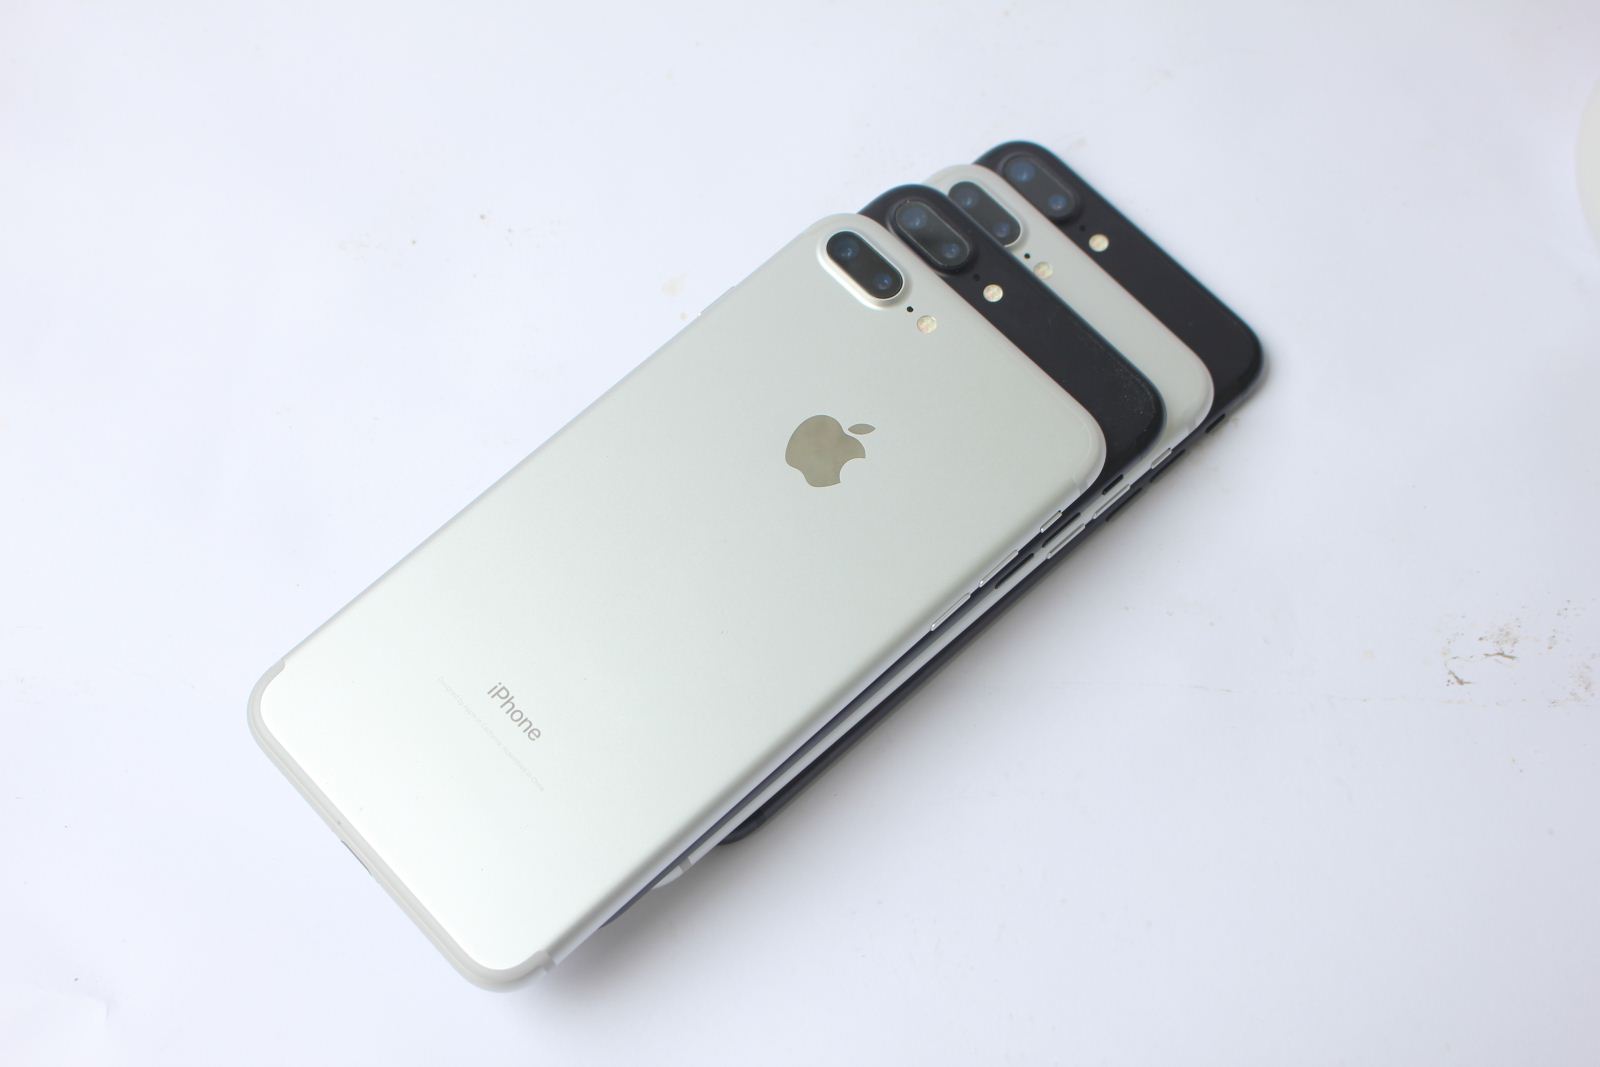 Iphone 7 plus xách tay về hàng kéo theo các sản phẩm khác giảm giá ?